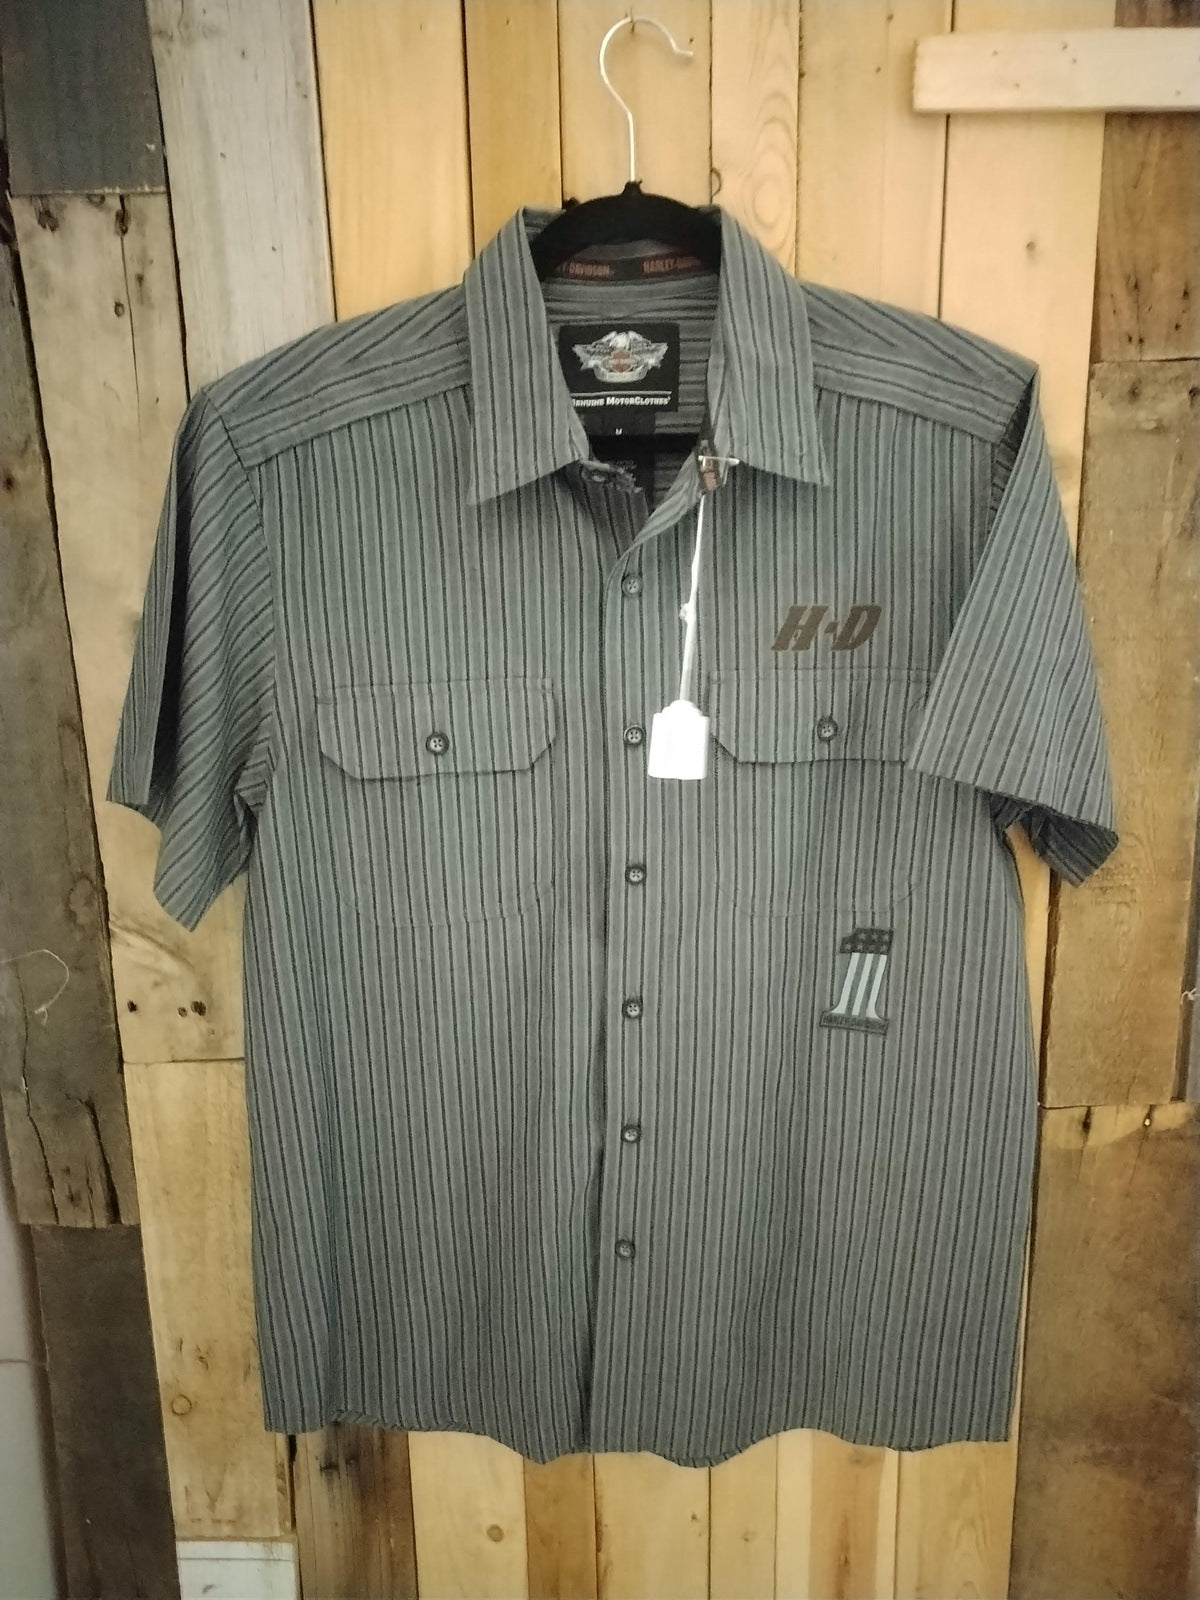 Harley Davidson Official Merchandise Men's Short Sleeve Button Up Shirt Size Medium